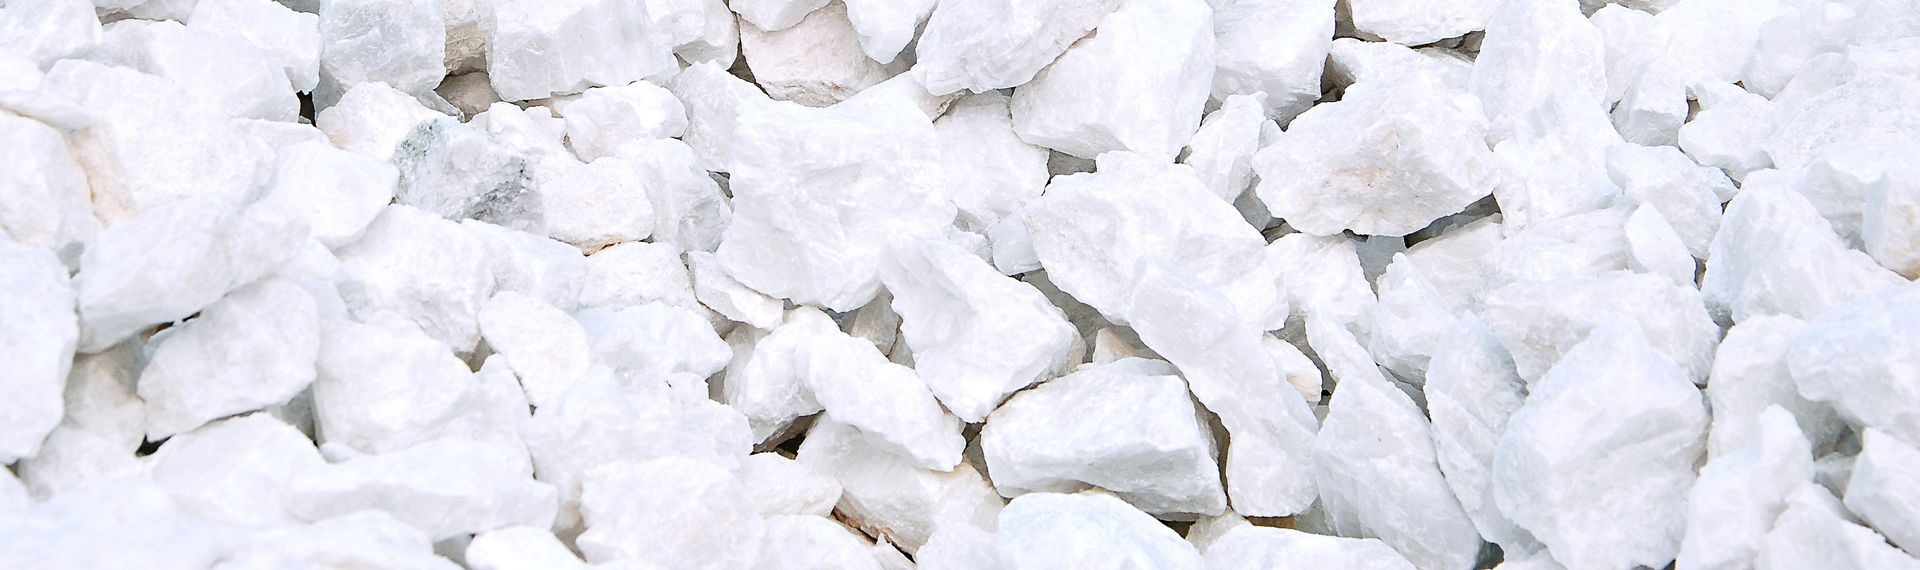 Đá vôi khai thác từ mỏ Mông Sơn có độ tinh khiết cao, độ trắng đồng nhất tự nhiên, đã được kiểm nghiệm và xác nhận là sản phẩm có chất lượng tốt nhất và độ mềm nhất trên thị trường. 